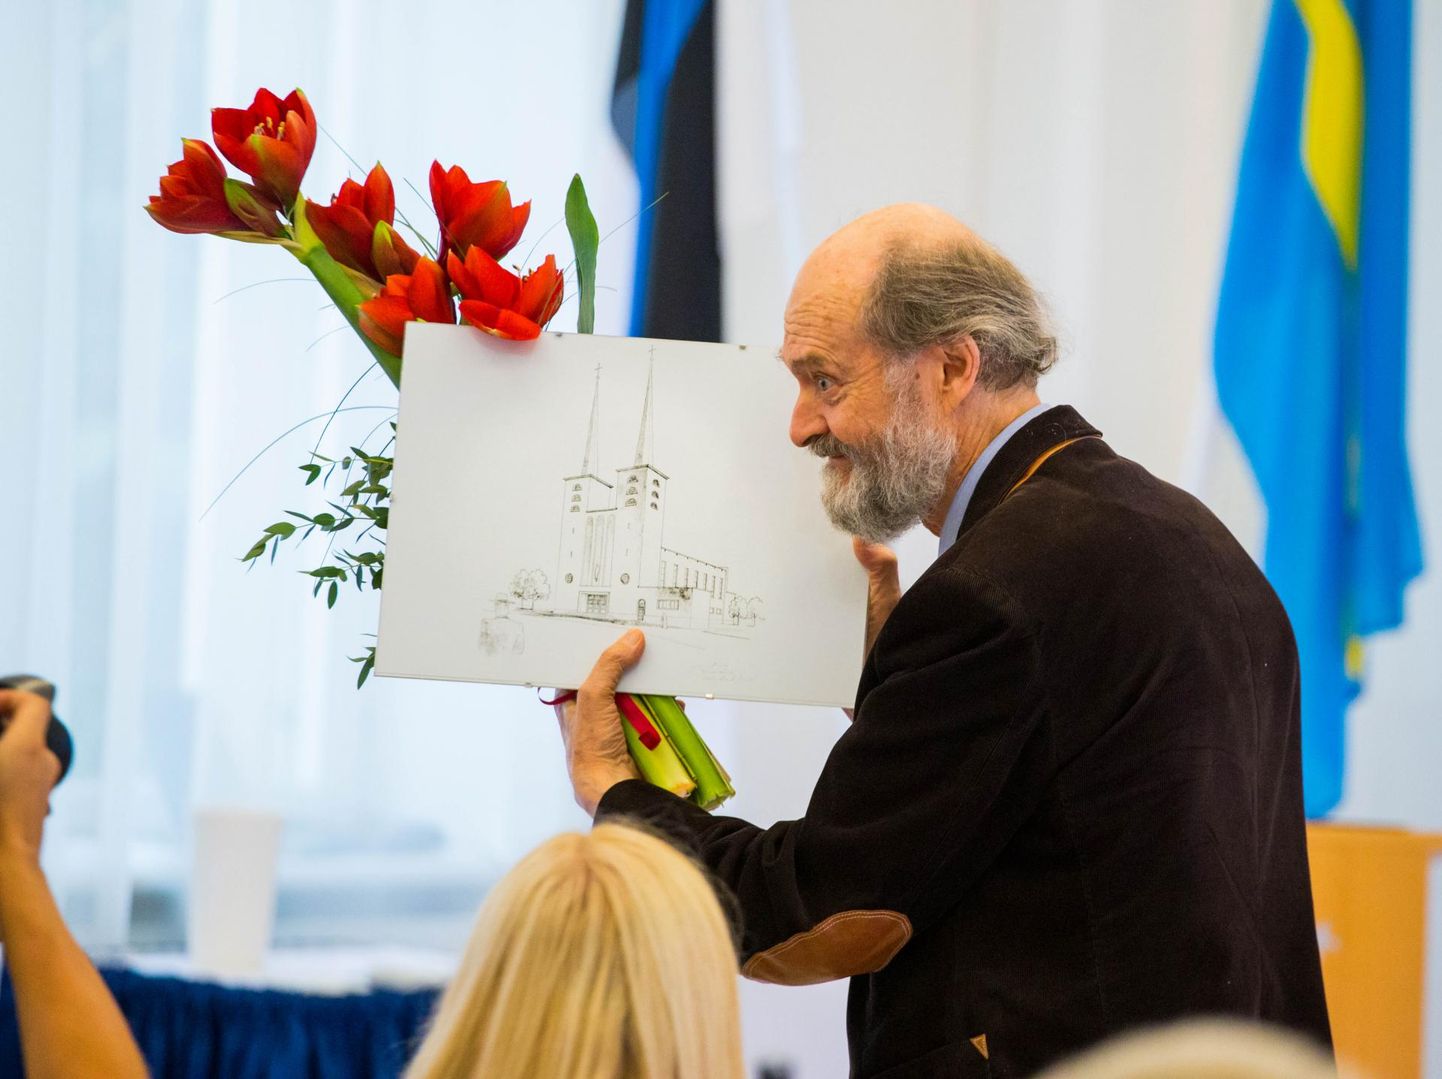 Täna tähistab Arvo Pärt oma sünnipäeva. Rakvere linnajuhid andsid talle muusikamaja projekteerimislepingu allkirjastamise tseremoonial üle kingituse.